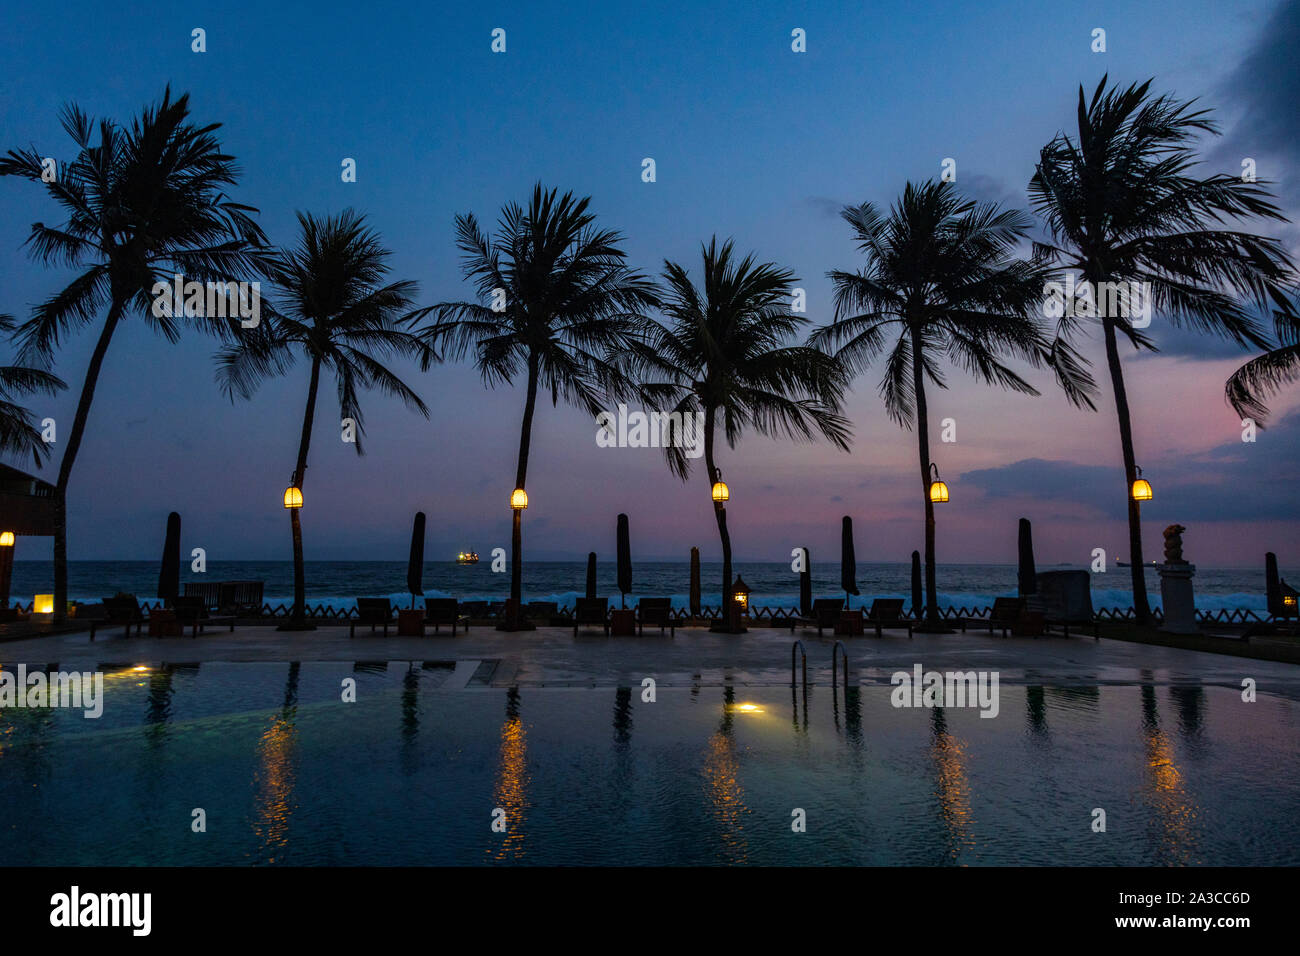 Piscine, palmiers et l'Océan Indien au crépuscule, resort de Candi Dasa ou Candidasa, Bali, Indonésie, Asie Banque D'Images